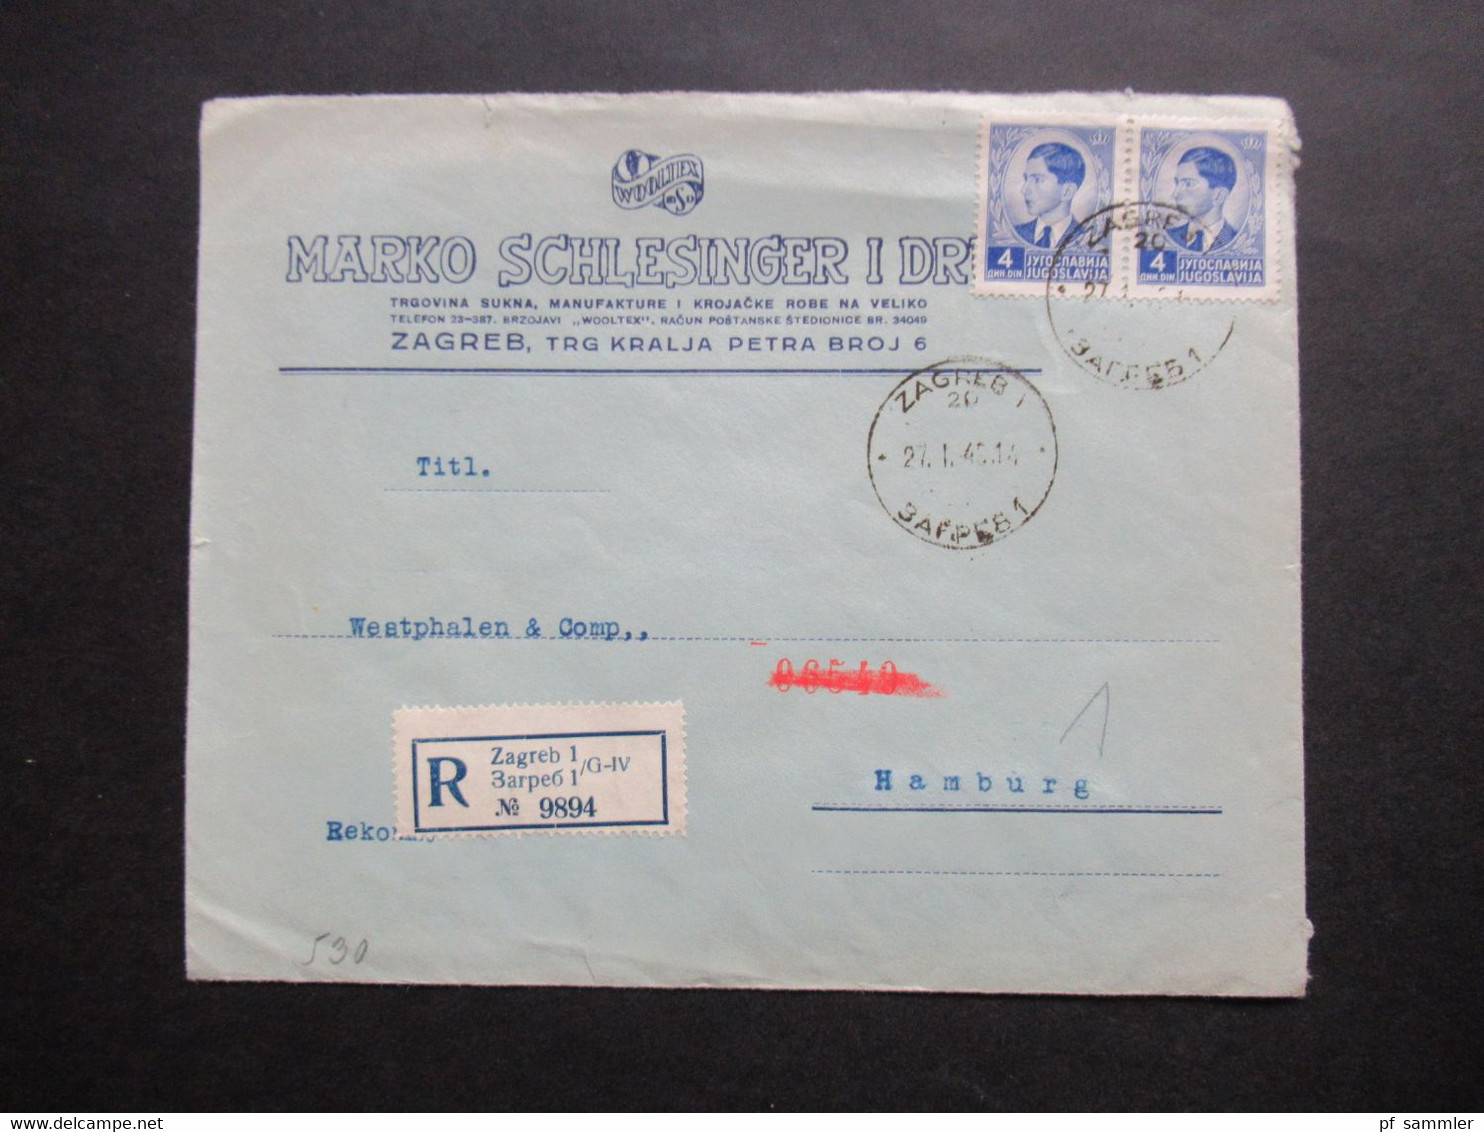 Jugoslawien 1940 Zensurbeleg / OKW Zensur Einschreiben Zagreb 1 Nach Hamburg Umschlag Marko Schlesinger - Covers & Documents